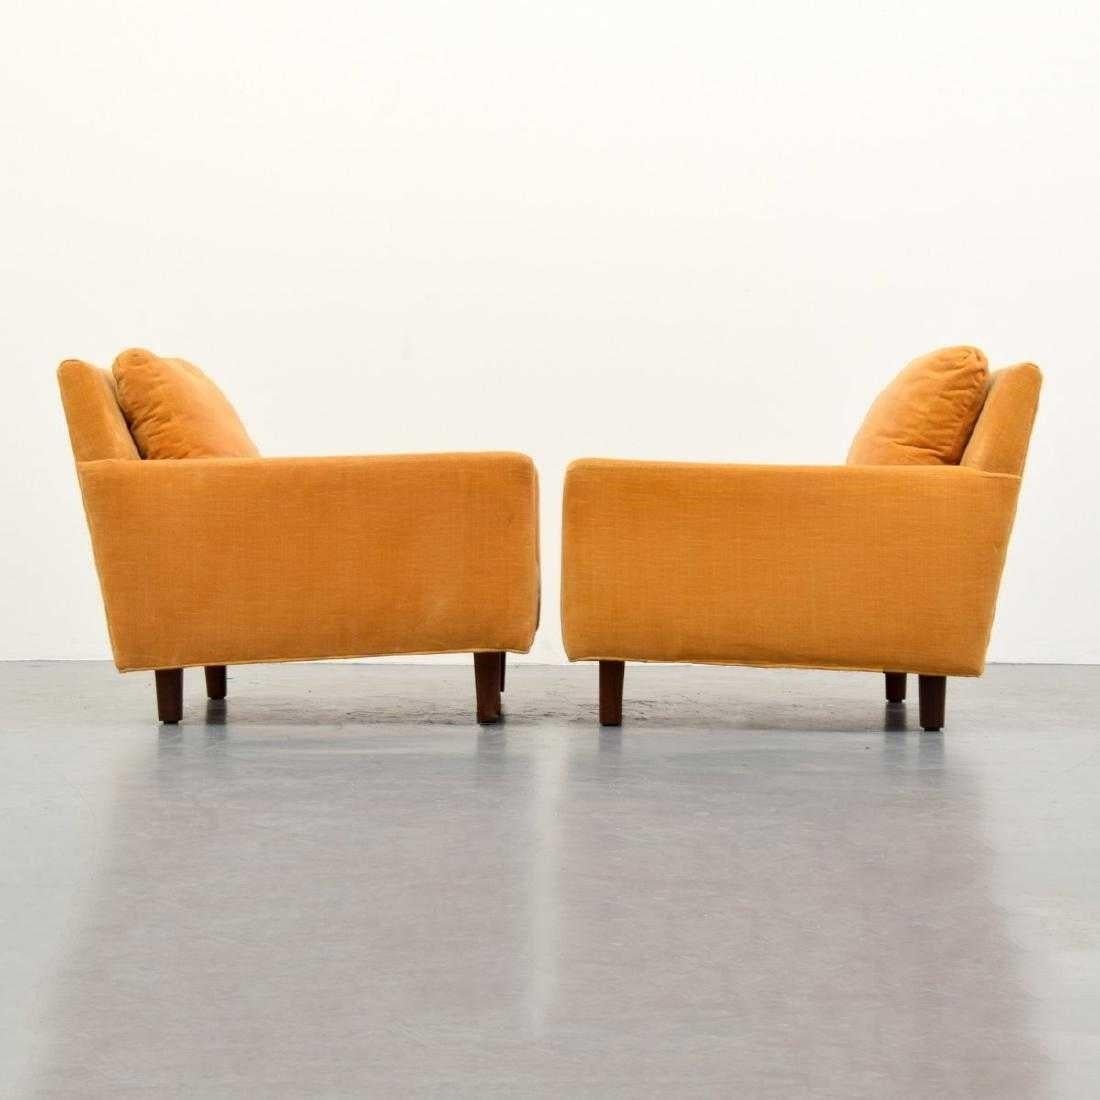 Dieses bequeme Paar Loungesessel aus der Jahrhundertmitte wurde von Milo Baughman für Thayer Coggin entworfen. Professionell gepolstert mit orange/gelbem Samtstoff und Massivholzfüßen.